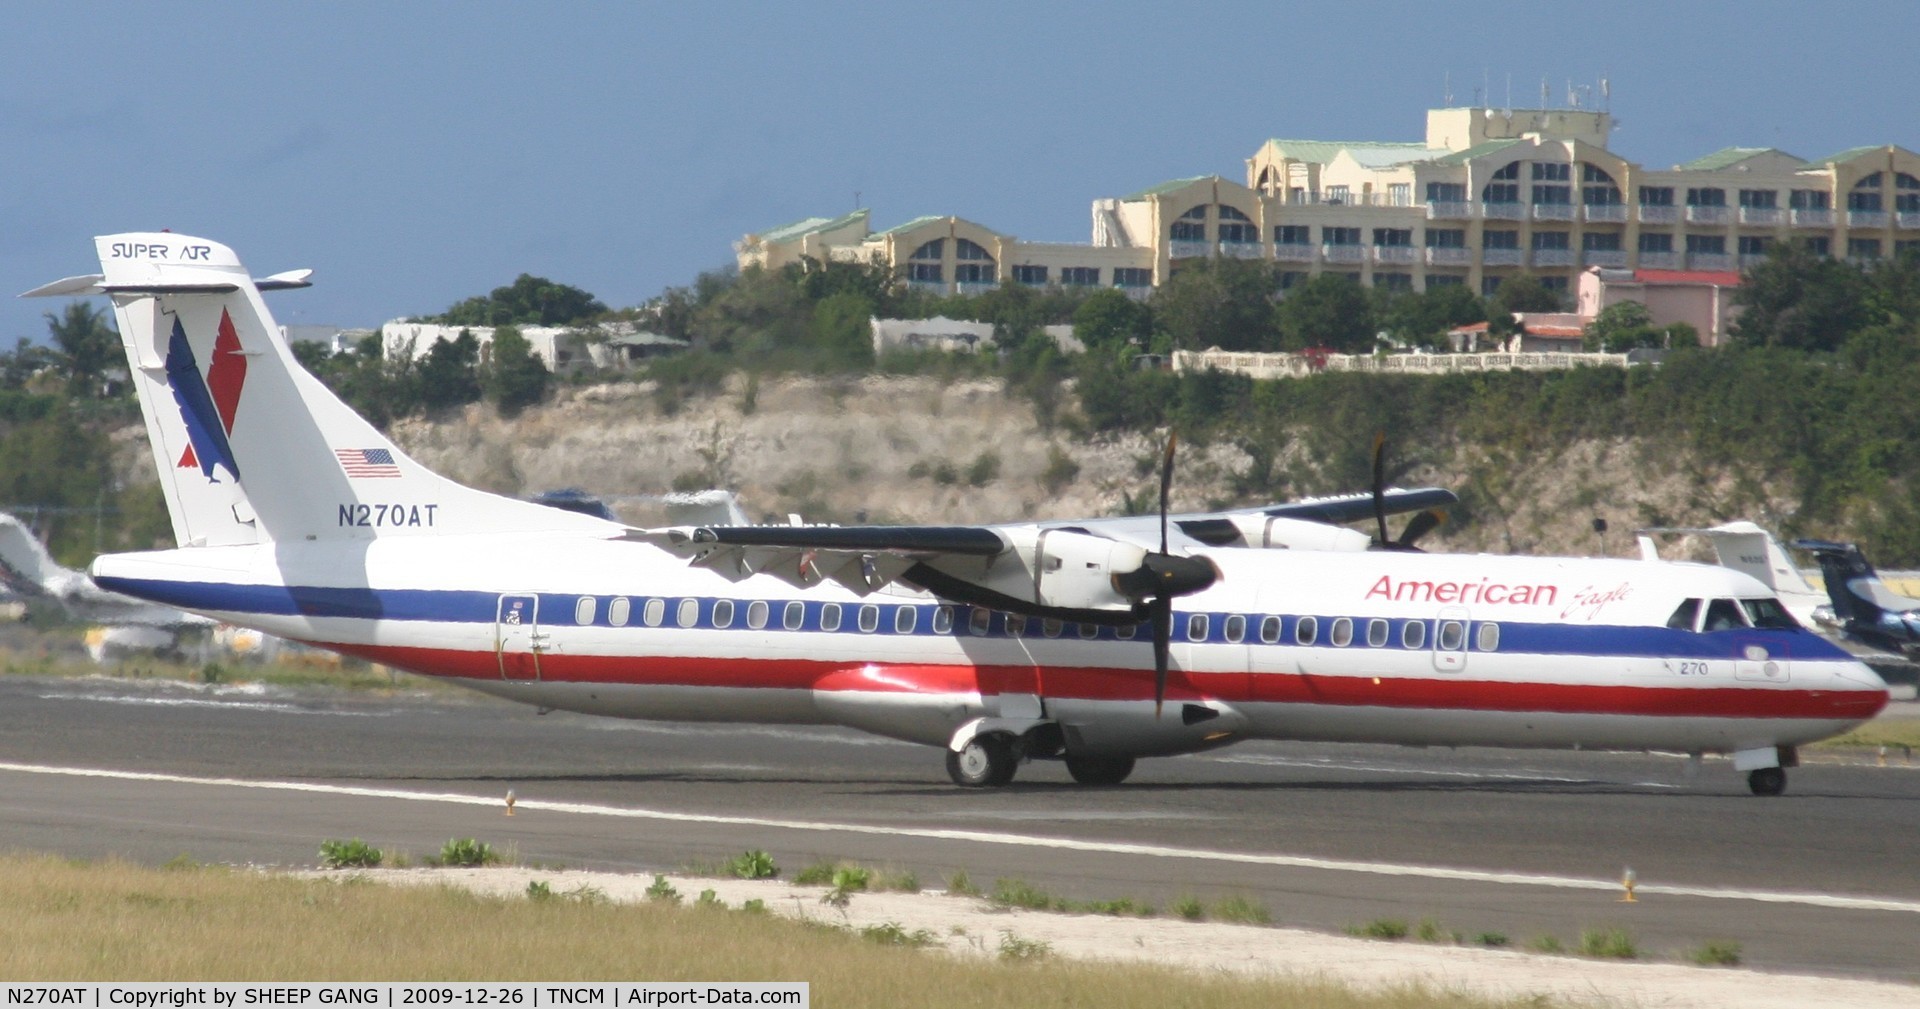 N270AT, 1991 ATR 72-212 C/N 270, American eagle N270AT just landed at tncm